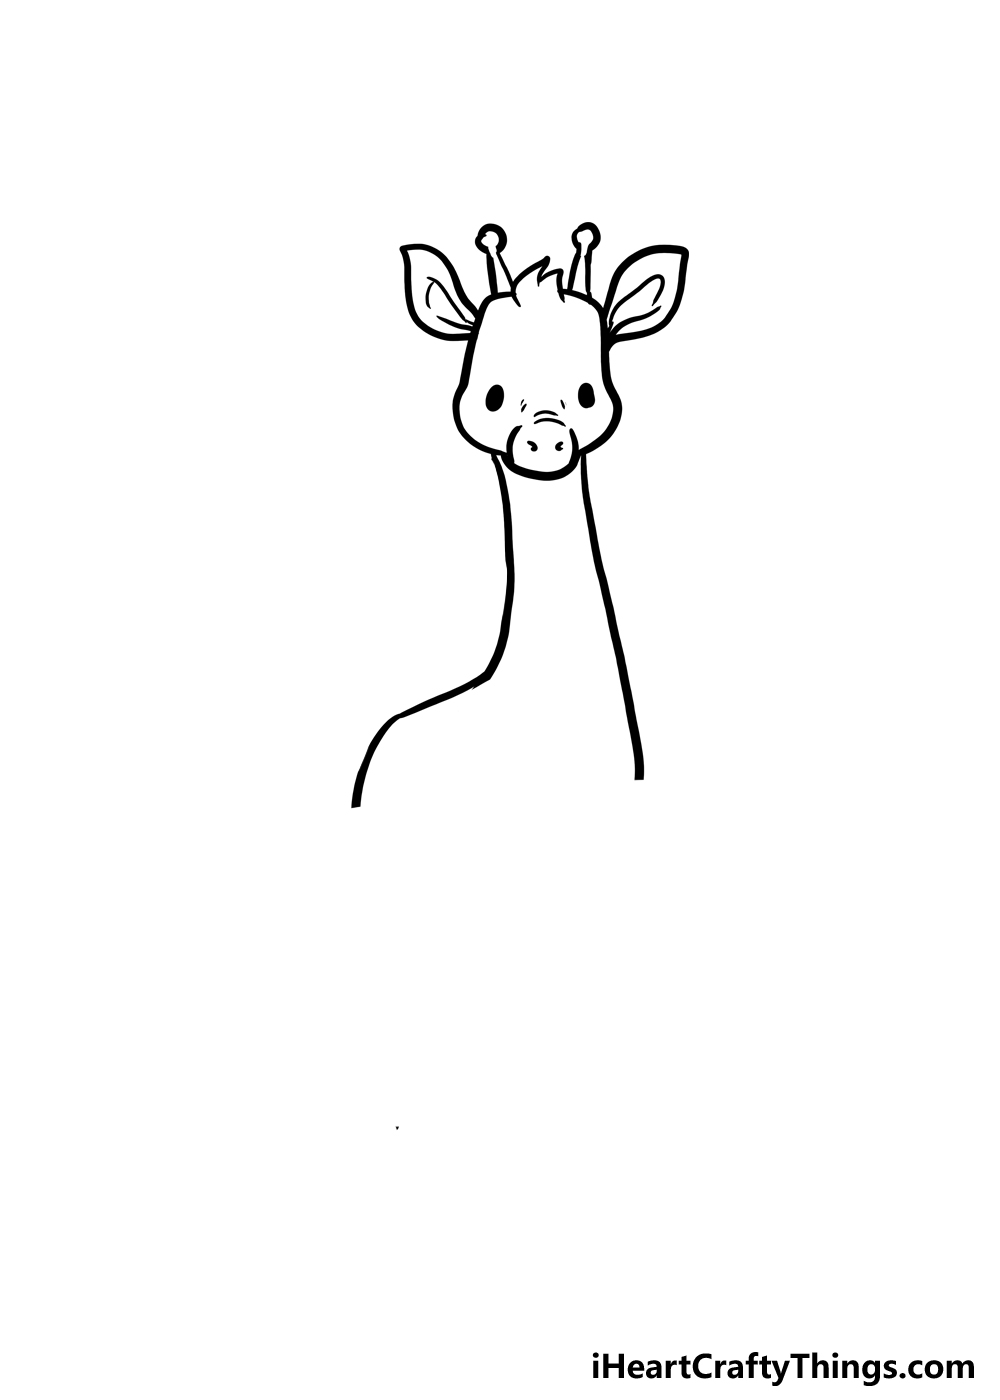 How to Draw A Cute Giraffe step 3